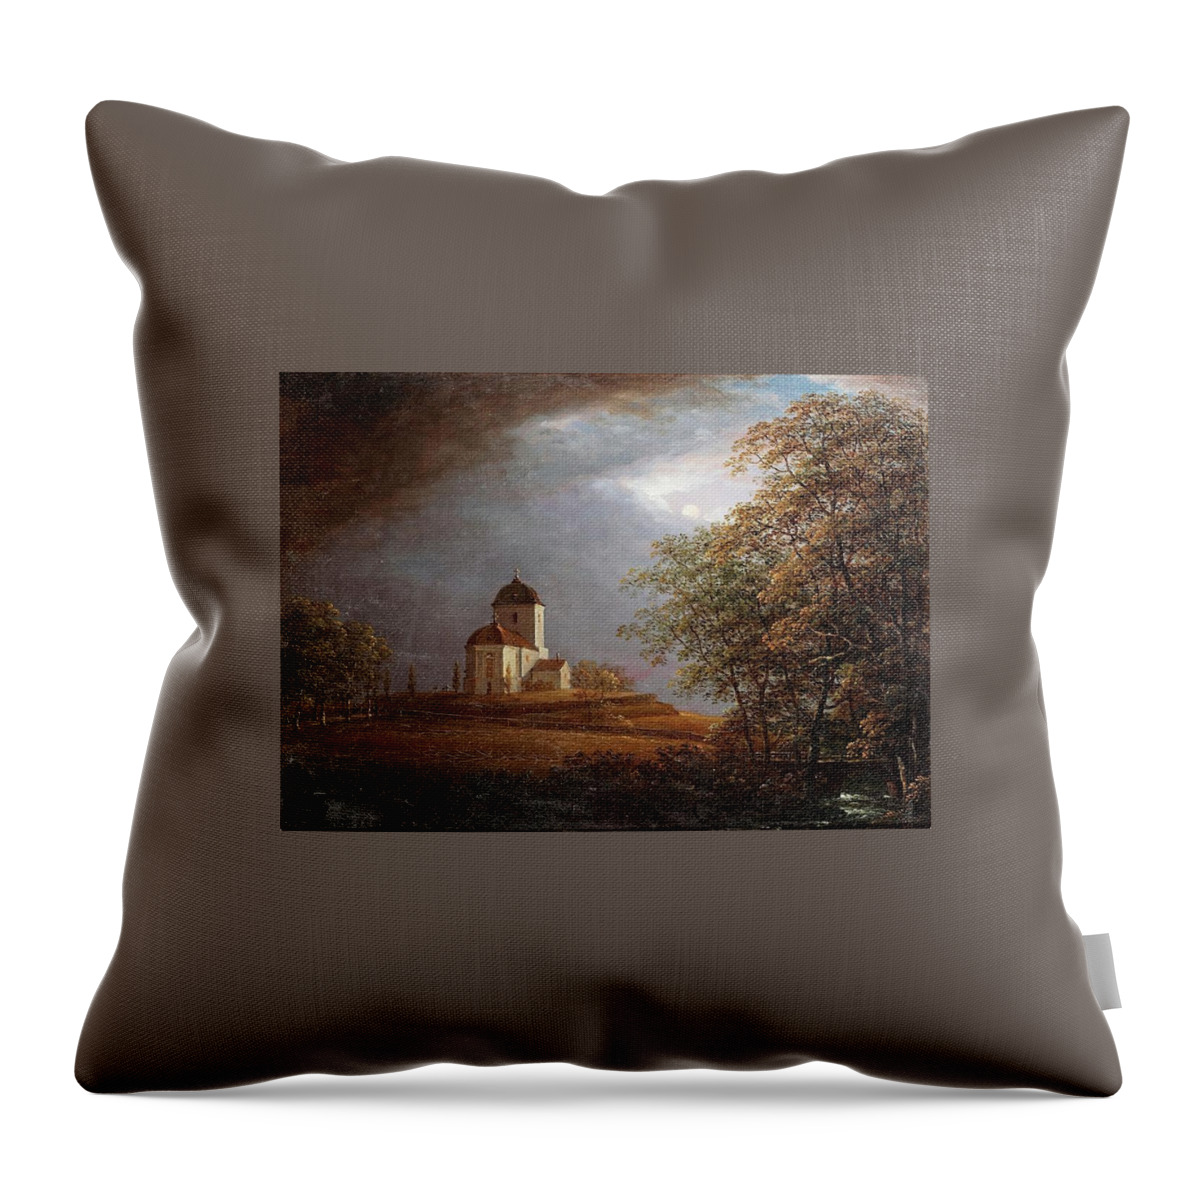 Carl Johan Fahlcrantz (1779-1861)-‘andrarams Church’-oil On Canvas-1836 Throw Pillow featuring the painting Oil On Canvas by Carl Johan